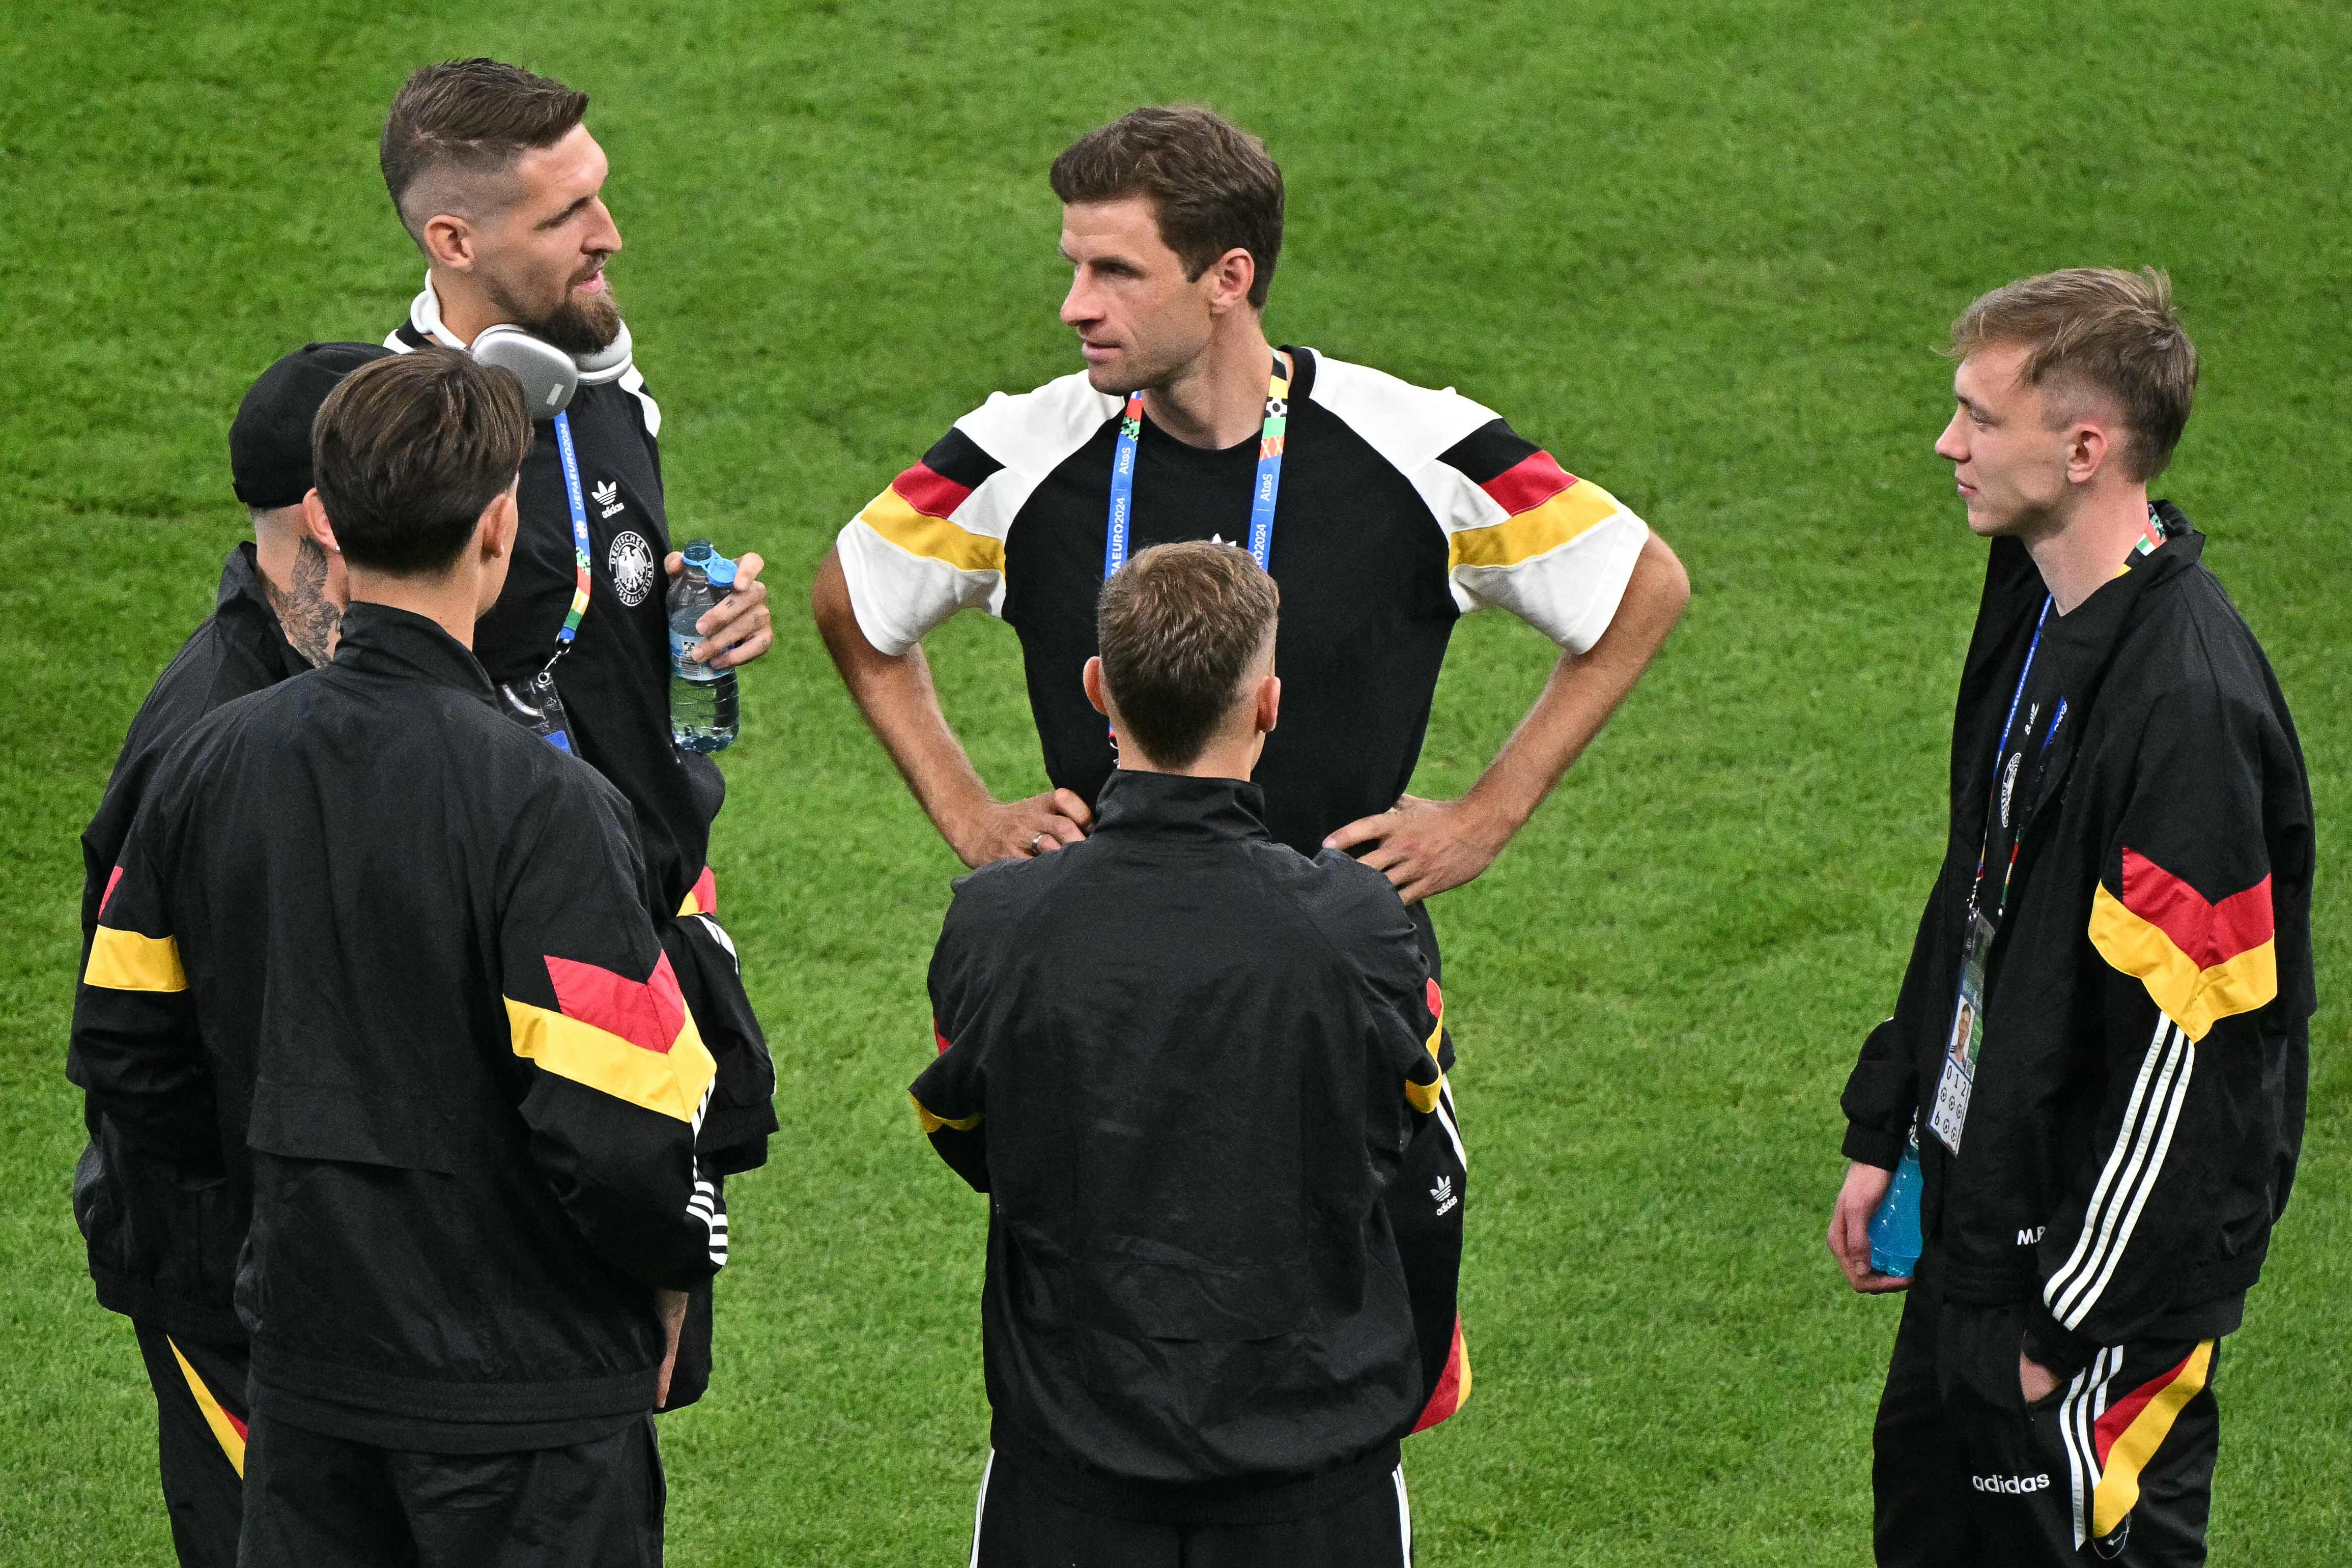 Los seleccionados alemanes, Robert Andrich, Thomas Mueller, y  Maximilian Beier, antes del partido contra Suiza en el Frankfurt Arena. (Foto Prensa Libre: AFP)